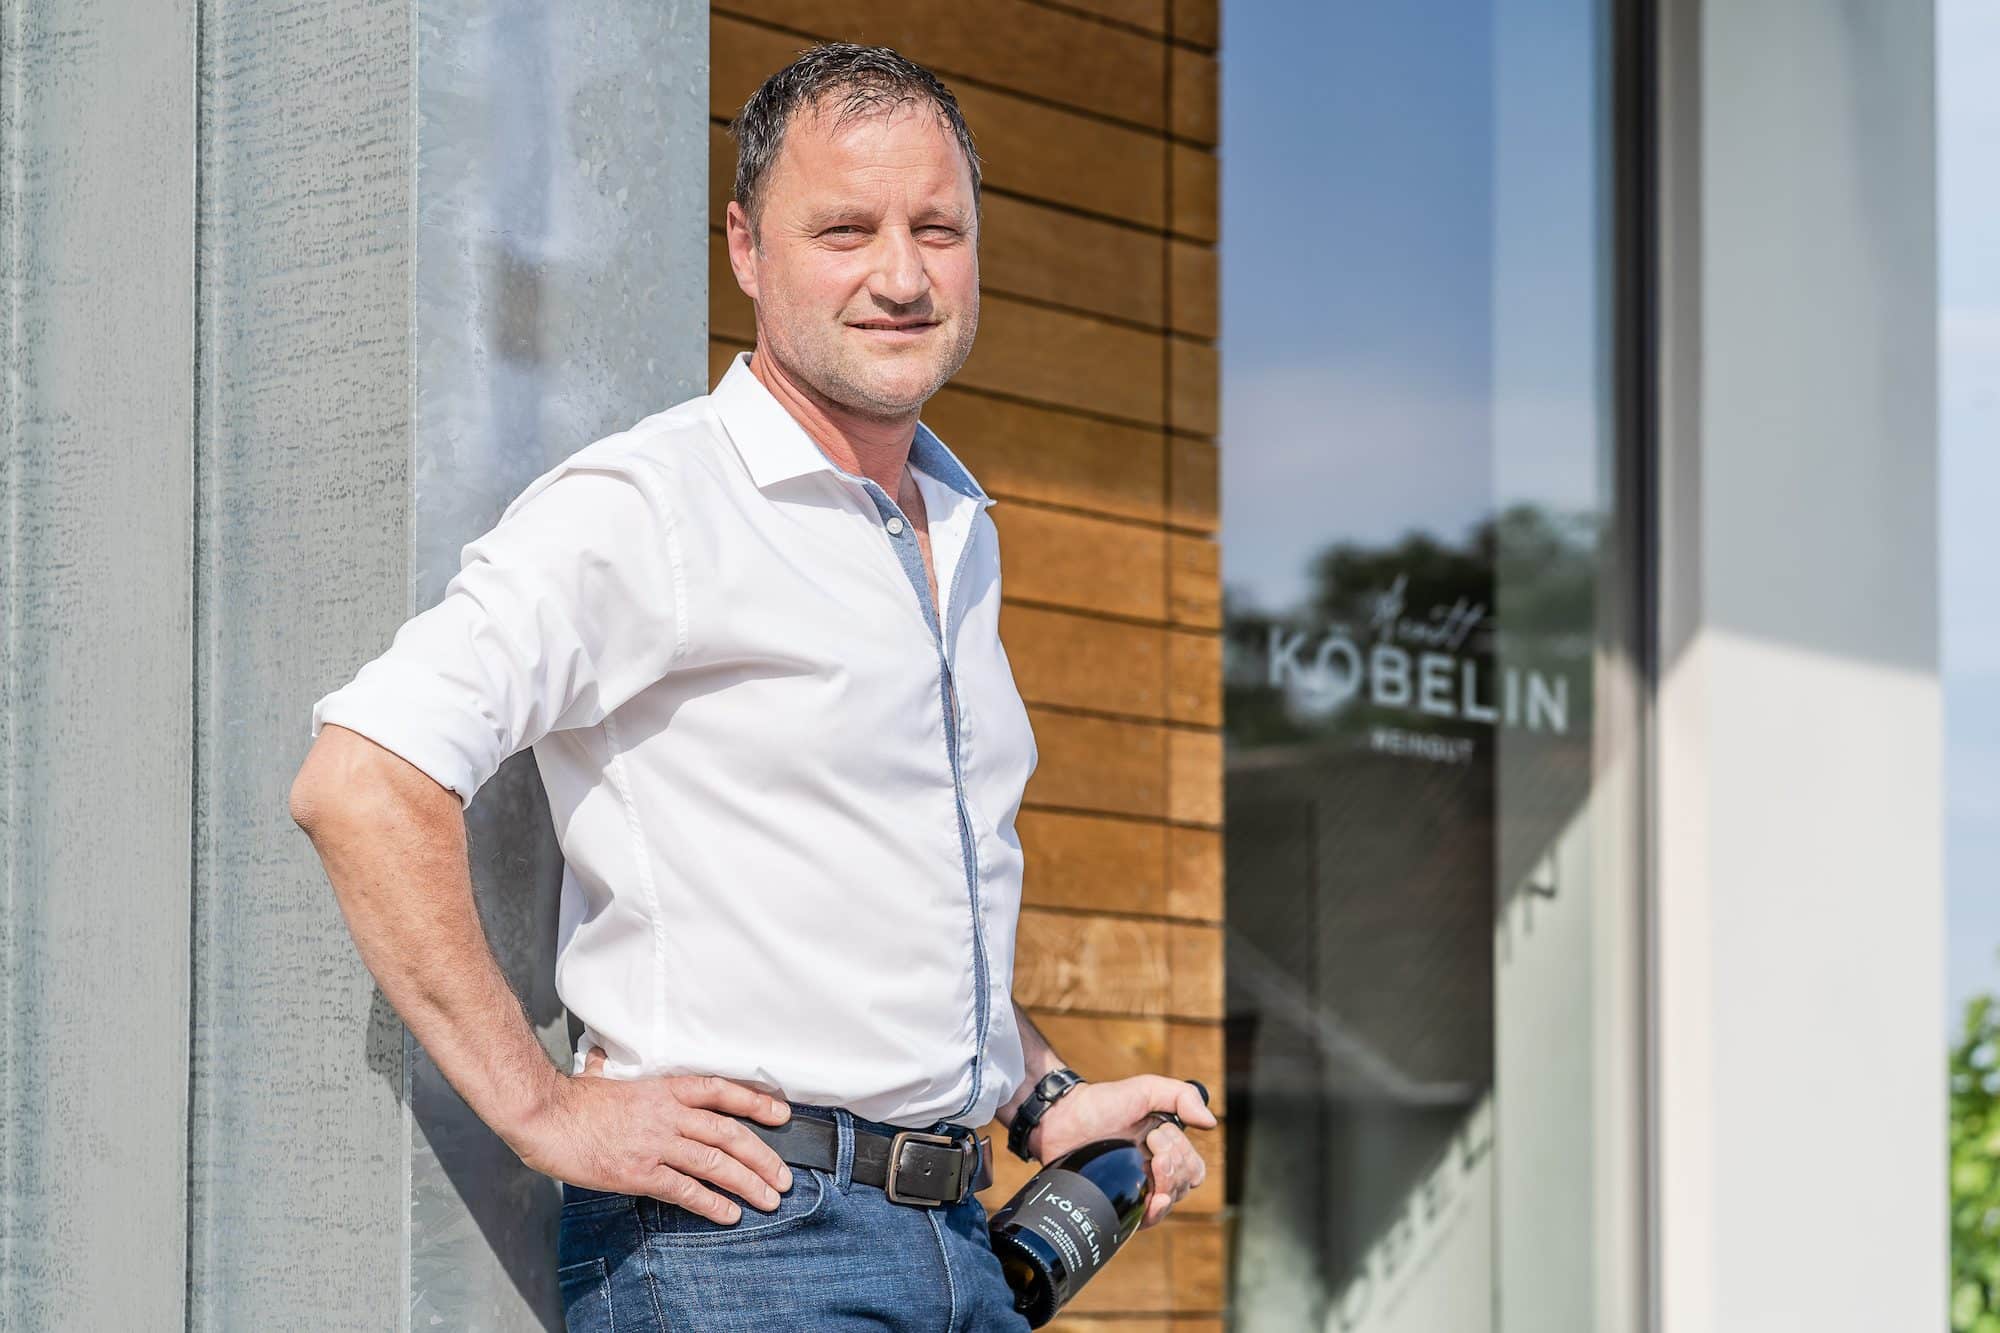 Arndt Köbelin, Gewinner unseres Wettbewerbes "Internationales Burgunder-Weingut des Jahres"